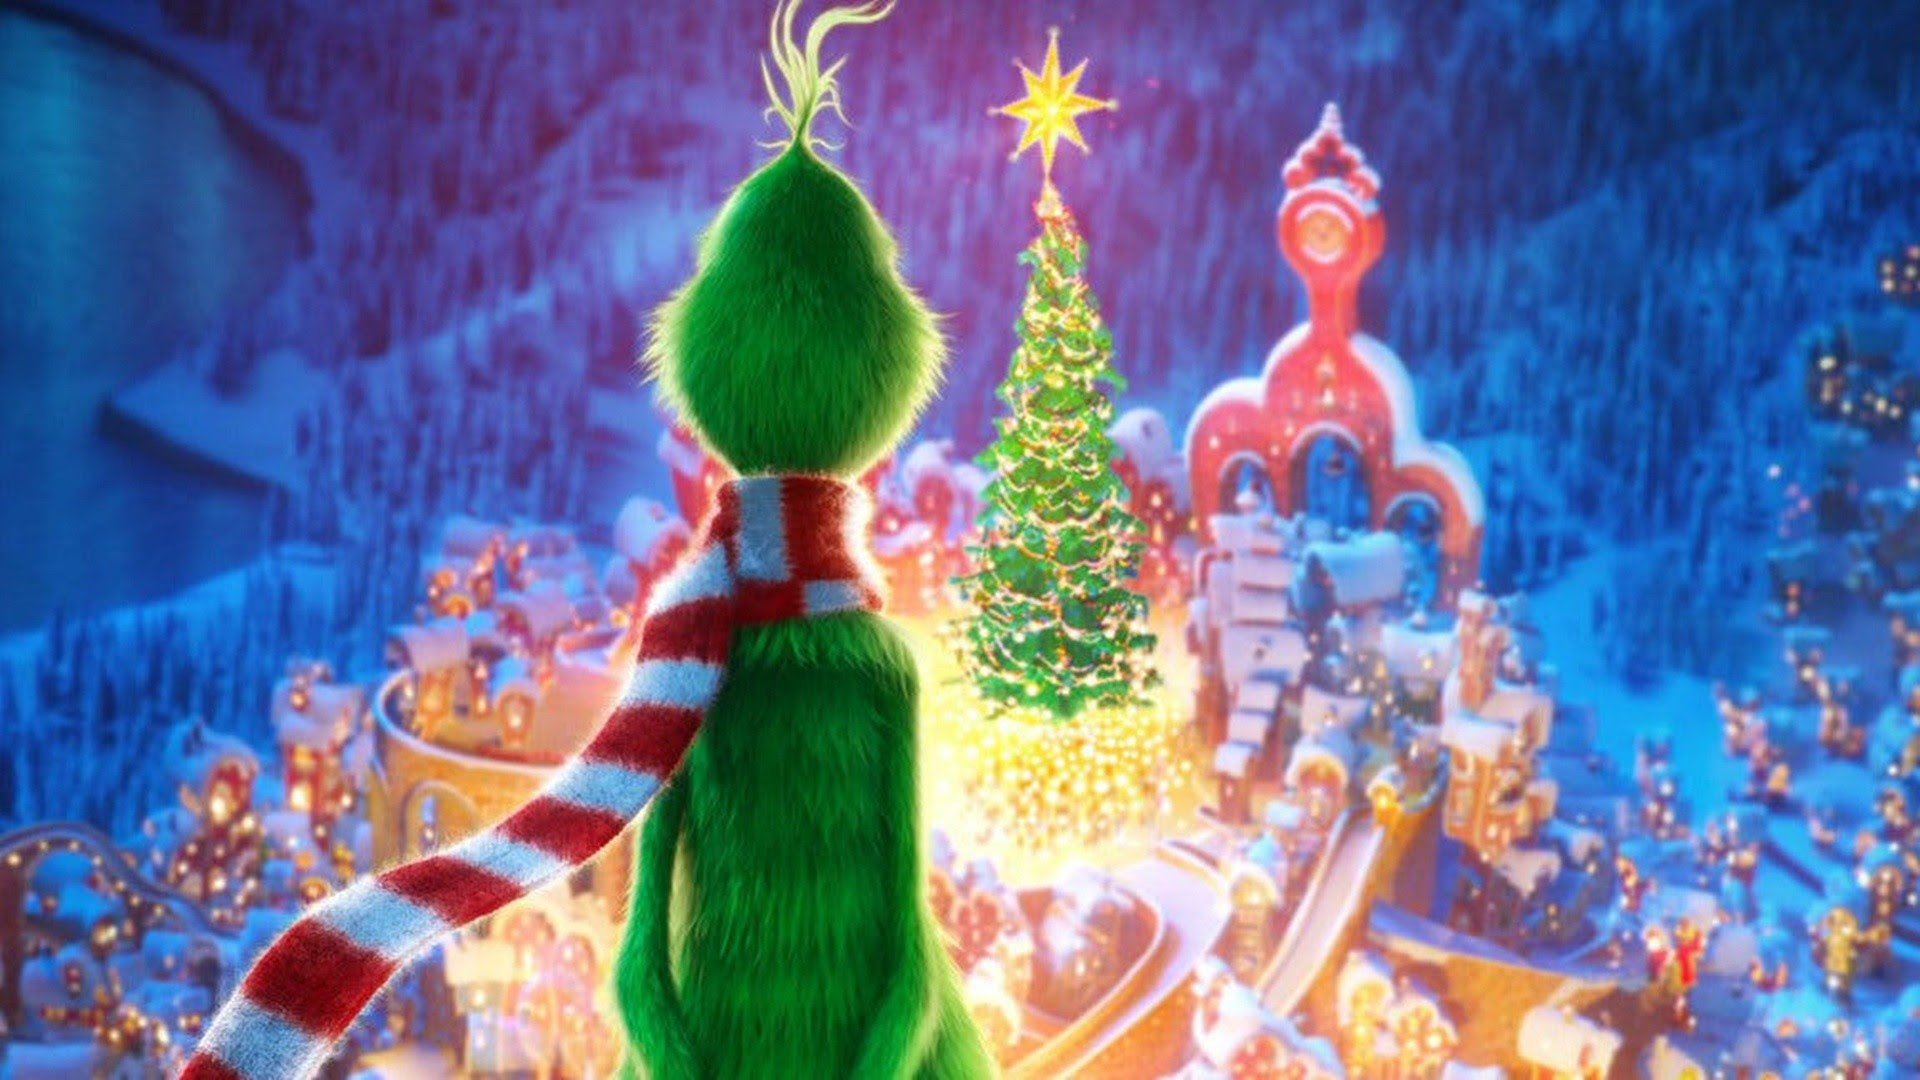 Hãy thưởng thức những bức hình nền Grinch đầy sắc màu để tăng thêm không khí Giáng Sinh cho ngôi nhà của bạn. Chúng sẽ mang lại cho bạn cảm giác vui tươi và vô cùng thoải mái.